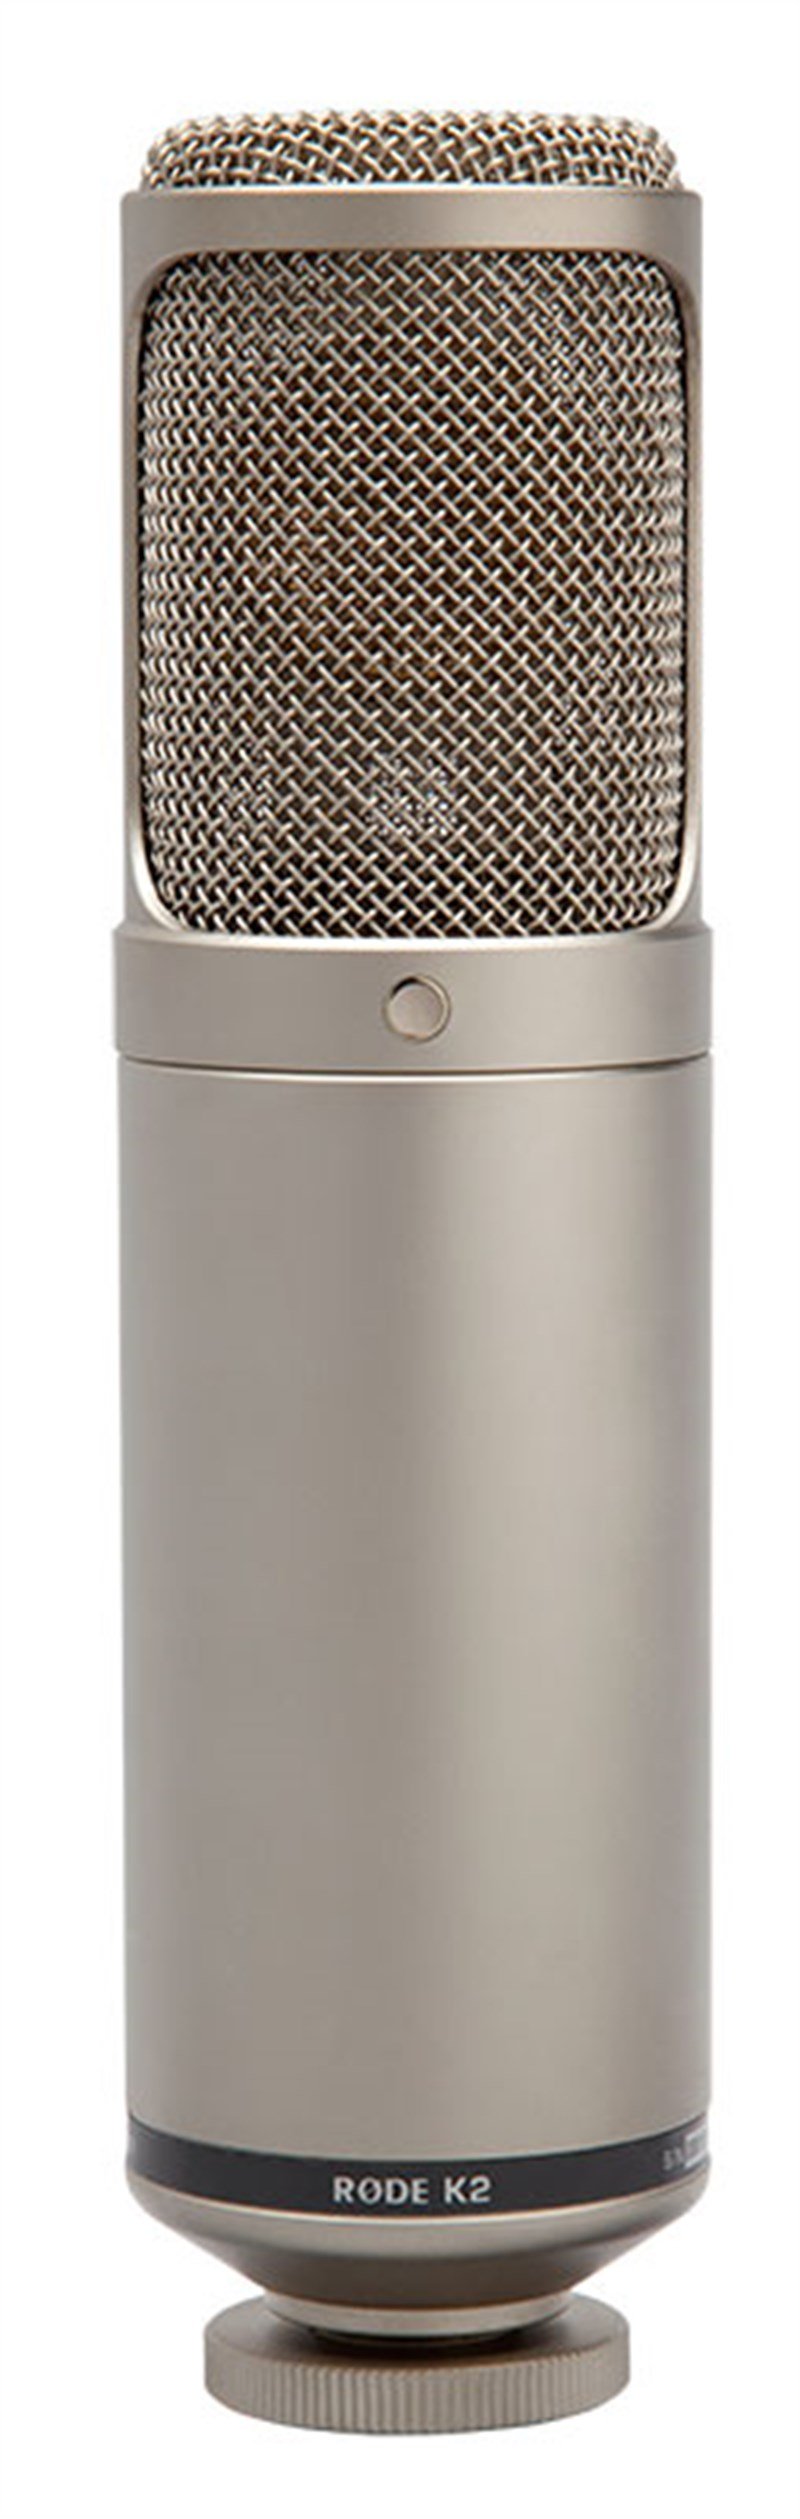 RODE K2 Geniş Diyaframlı Tüp Mikrofon Mikrofon Fiyatı ve Özellikleri  ®MeduMuzikMarket.com'da